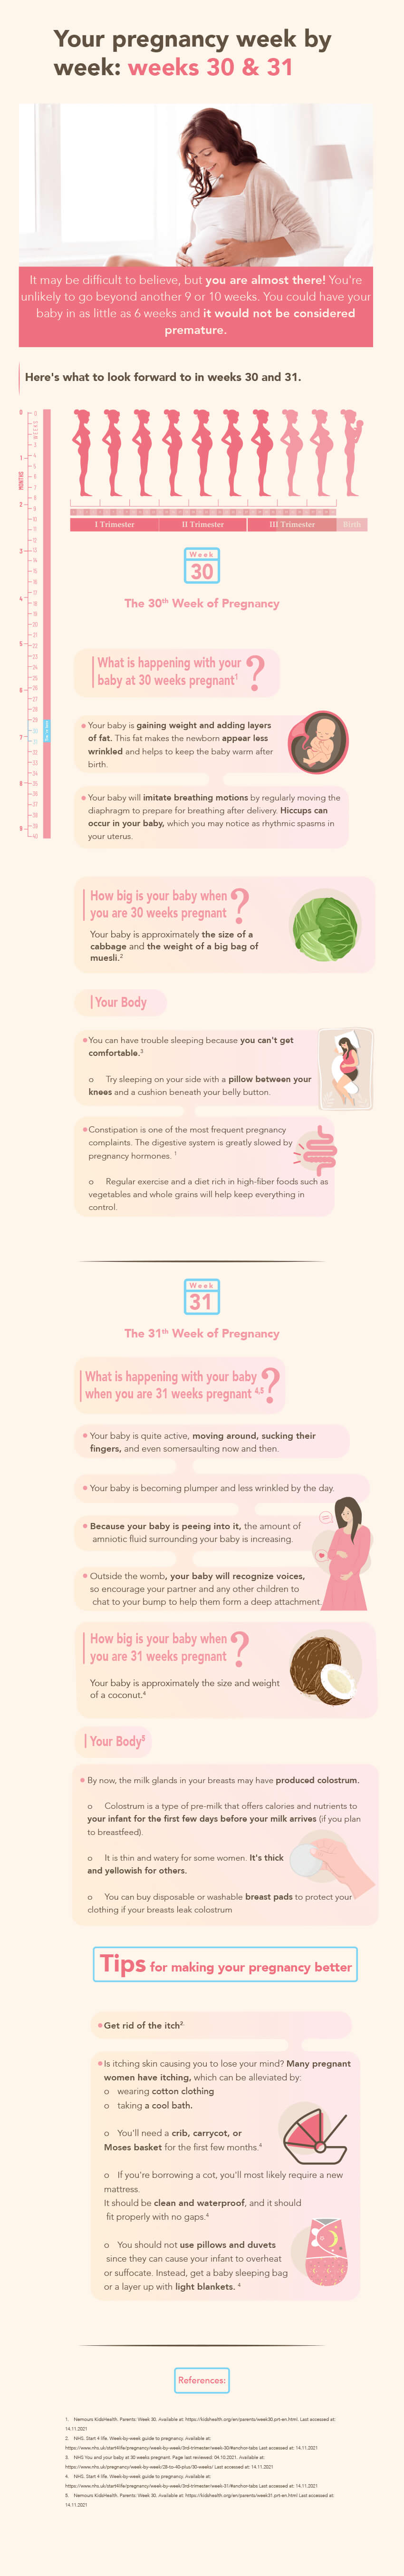 Pregnancy weeks 30&31